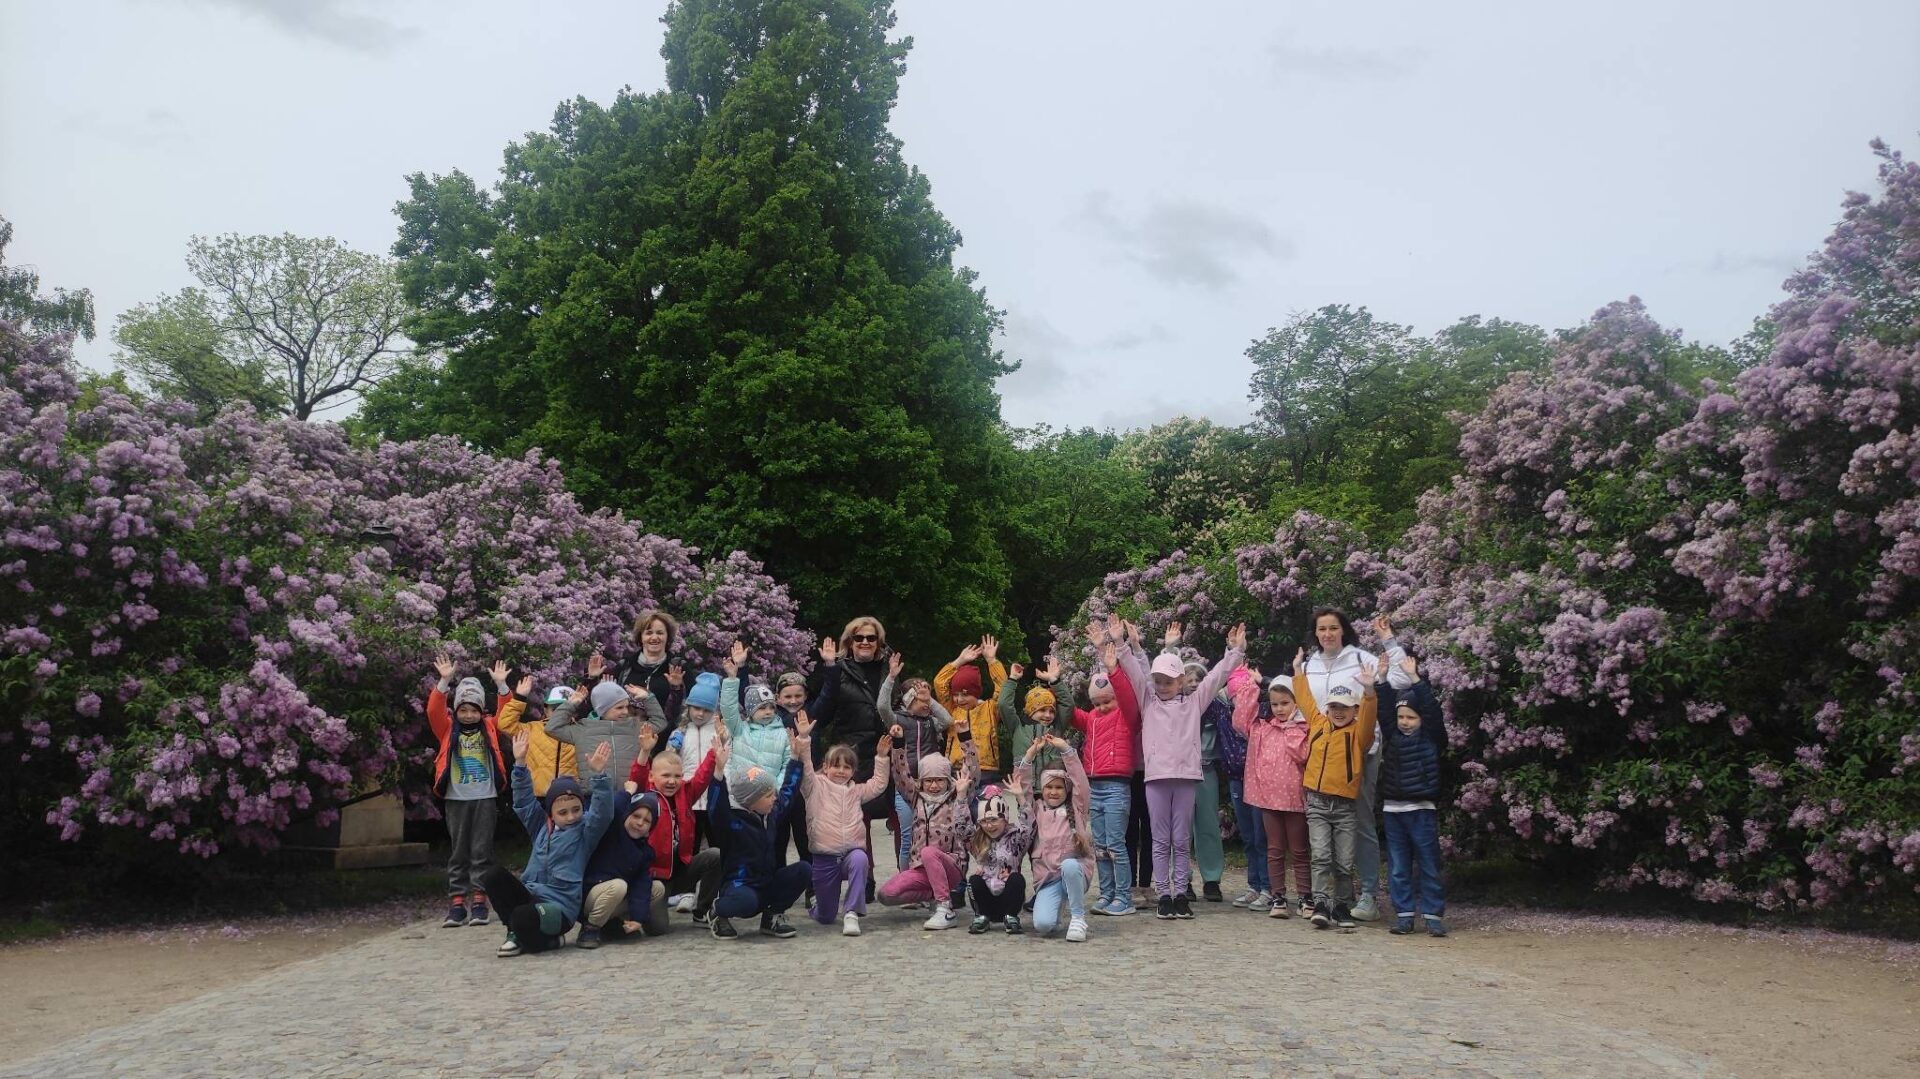 grupowe zdjęcie przedszkolaków w parku, na tle kwitnących krzewów